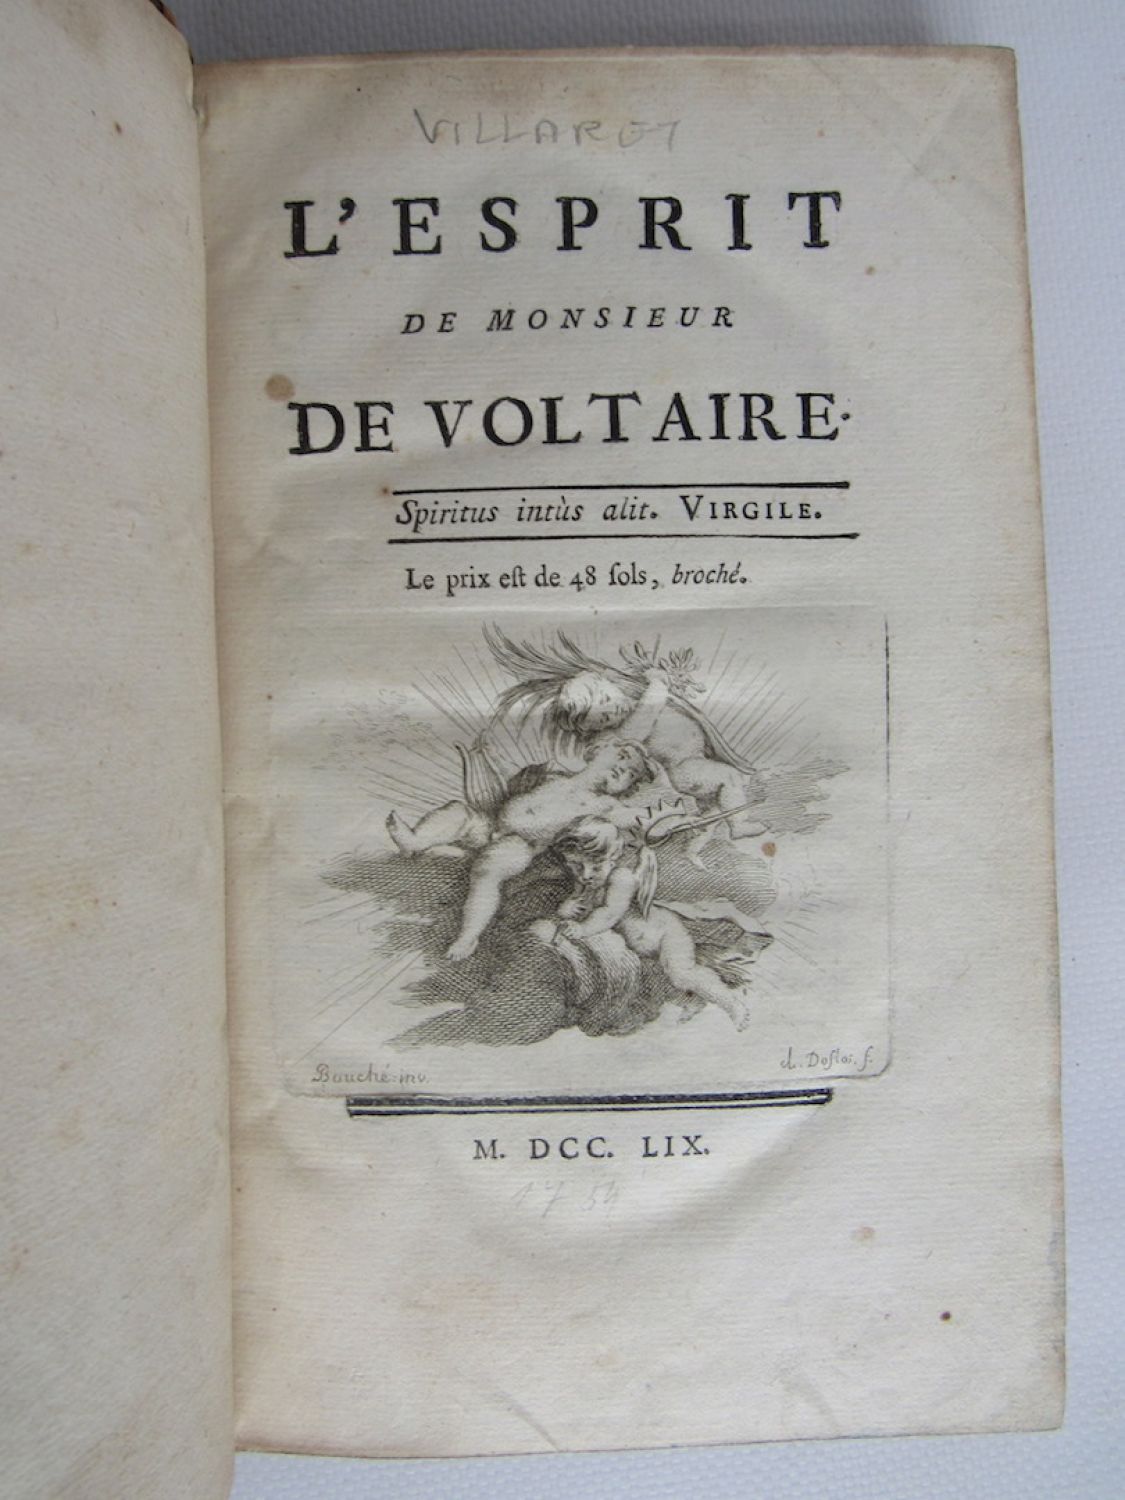 日本卸値Voltaire著 Claude Villaret編『L’esprit de monsieur De Voltaire』1759年初版本 ヴォルテール名言集 画集